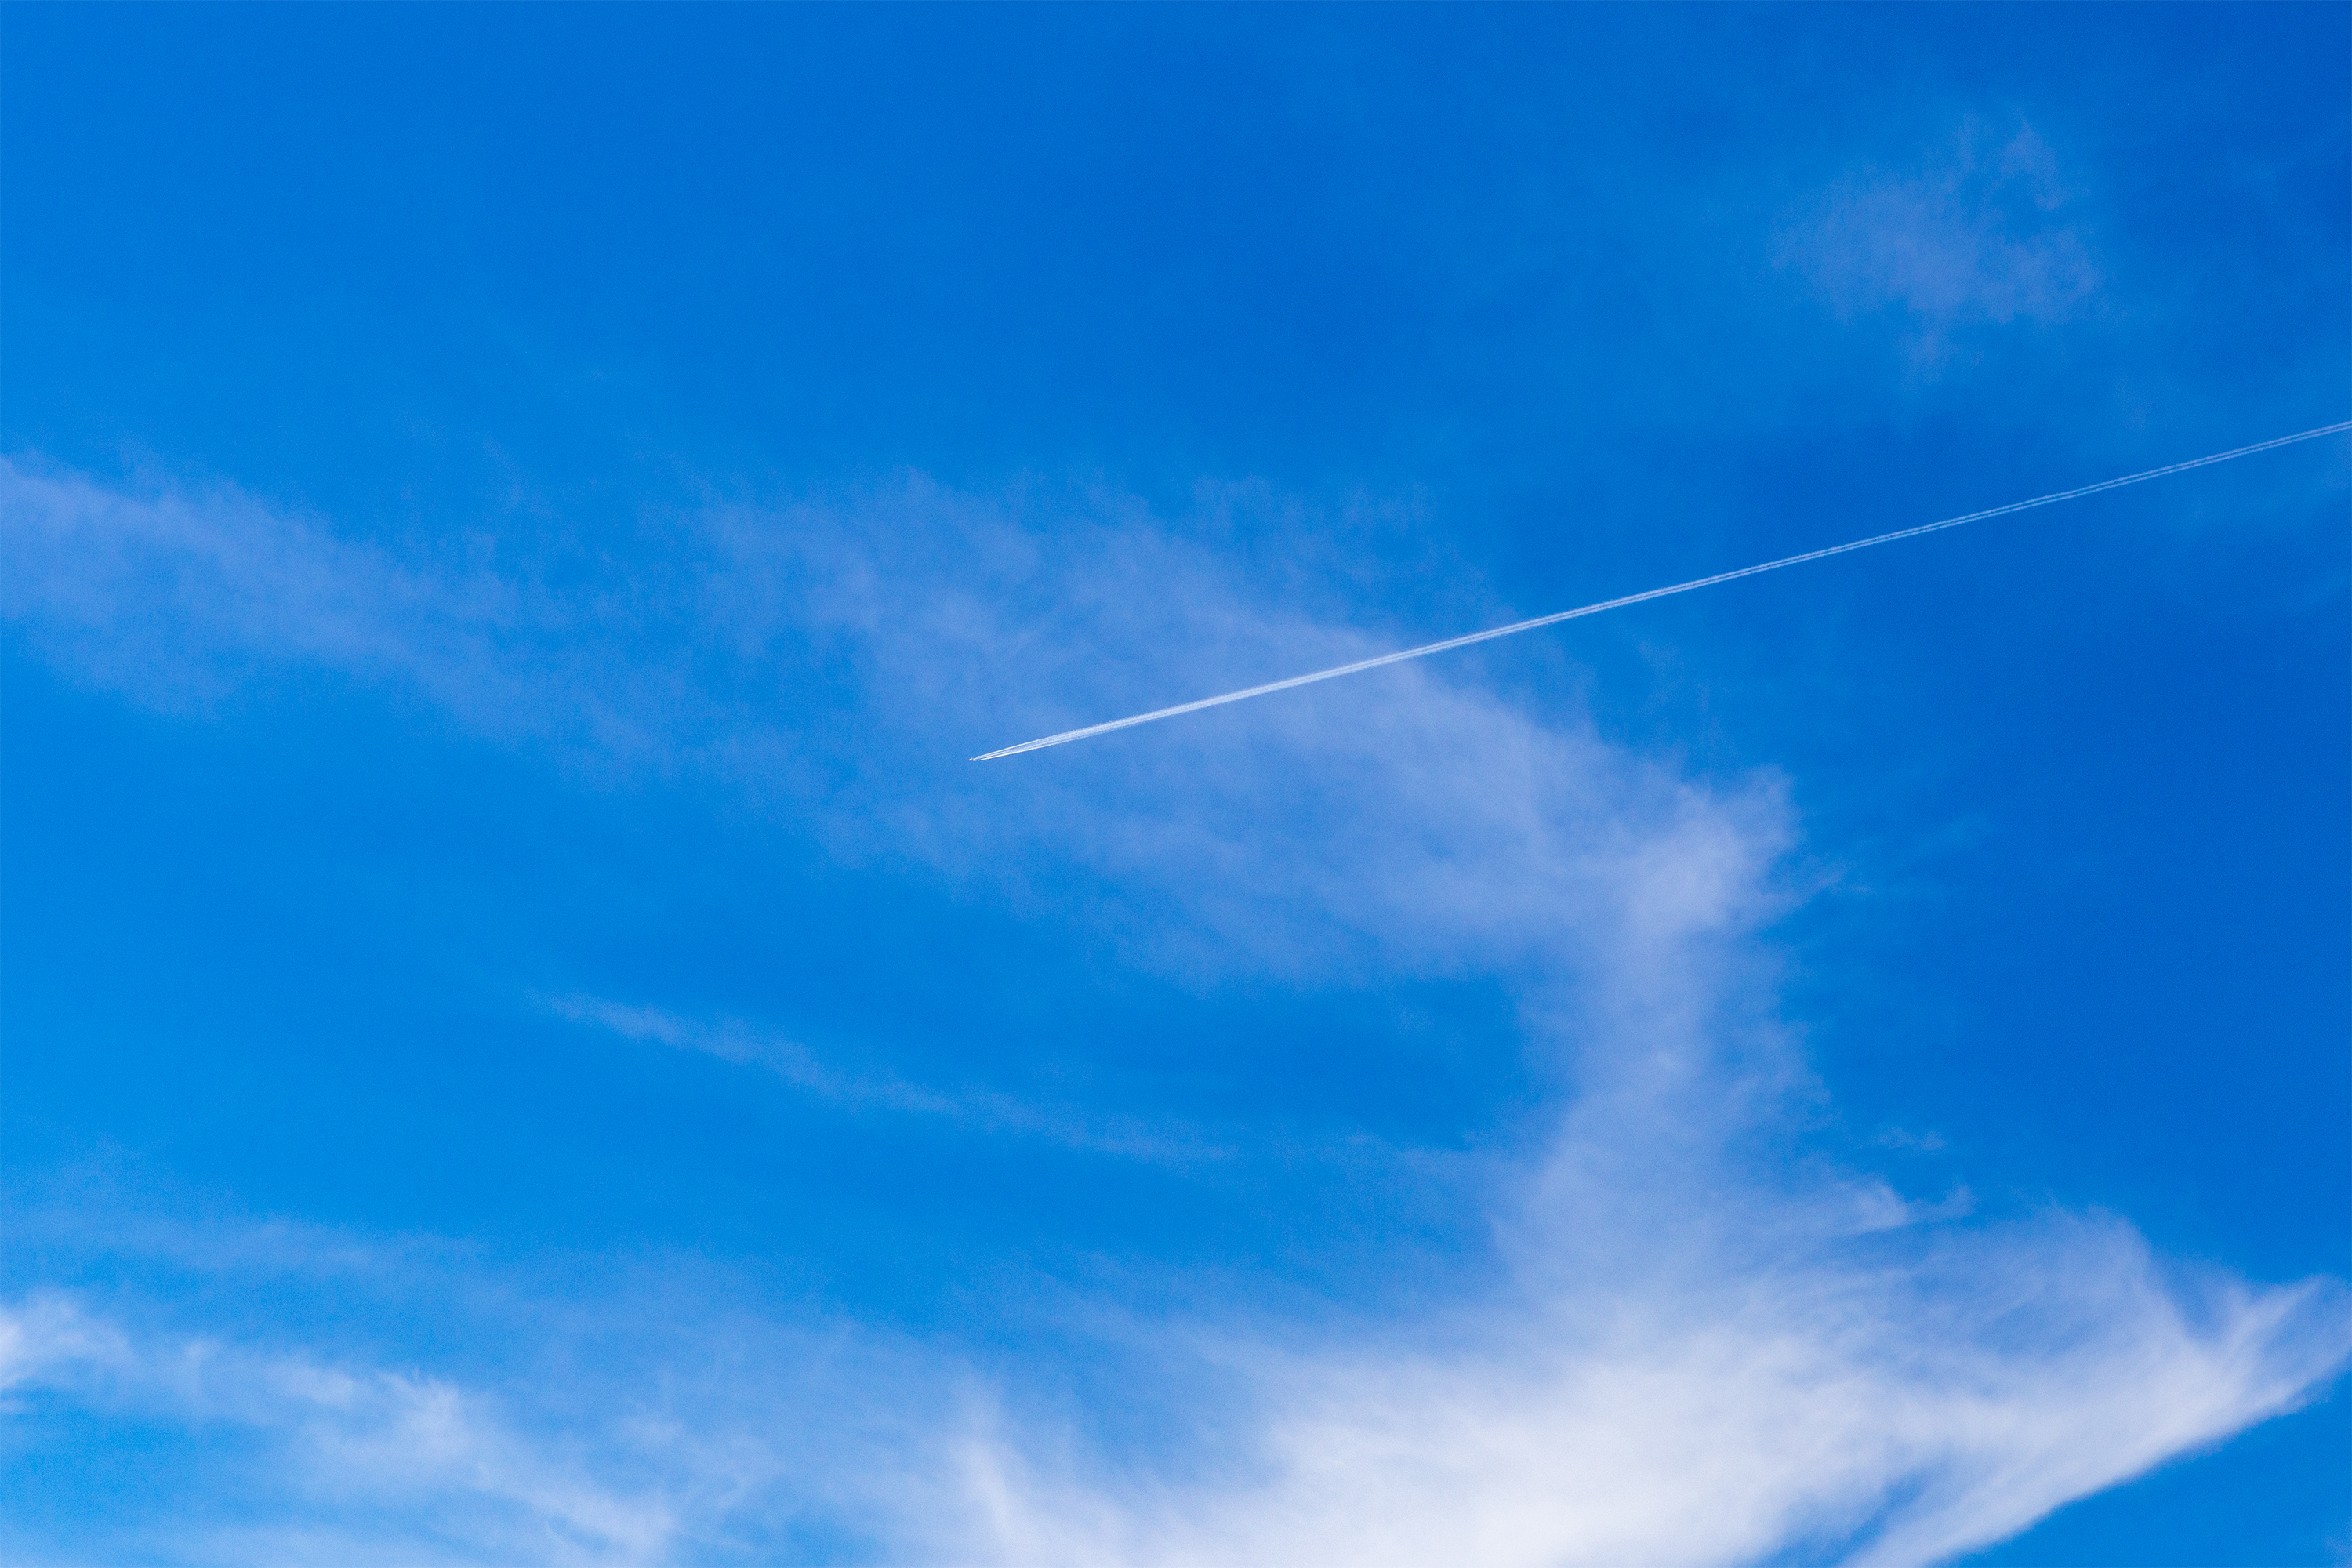 快晴の空と飛行機雲 無料の高画質フリー写真素材 イメージズラボ